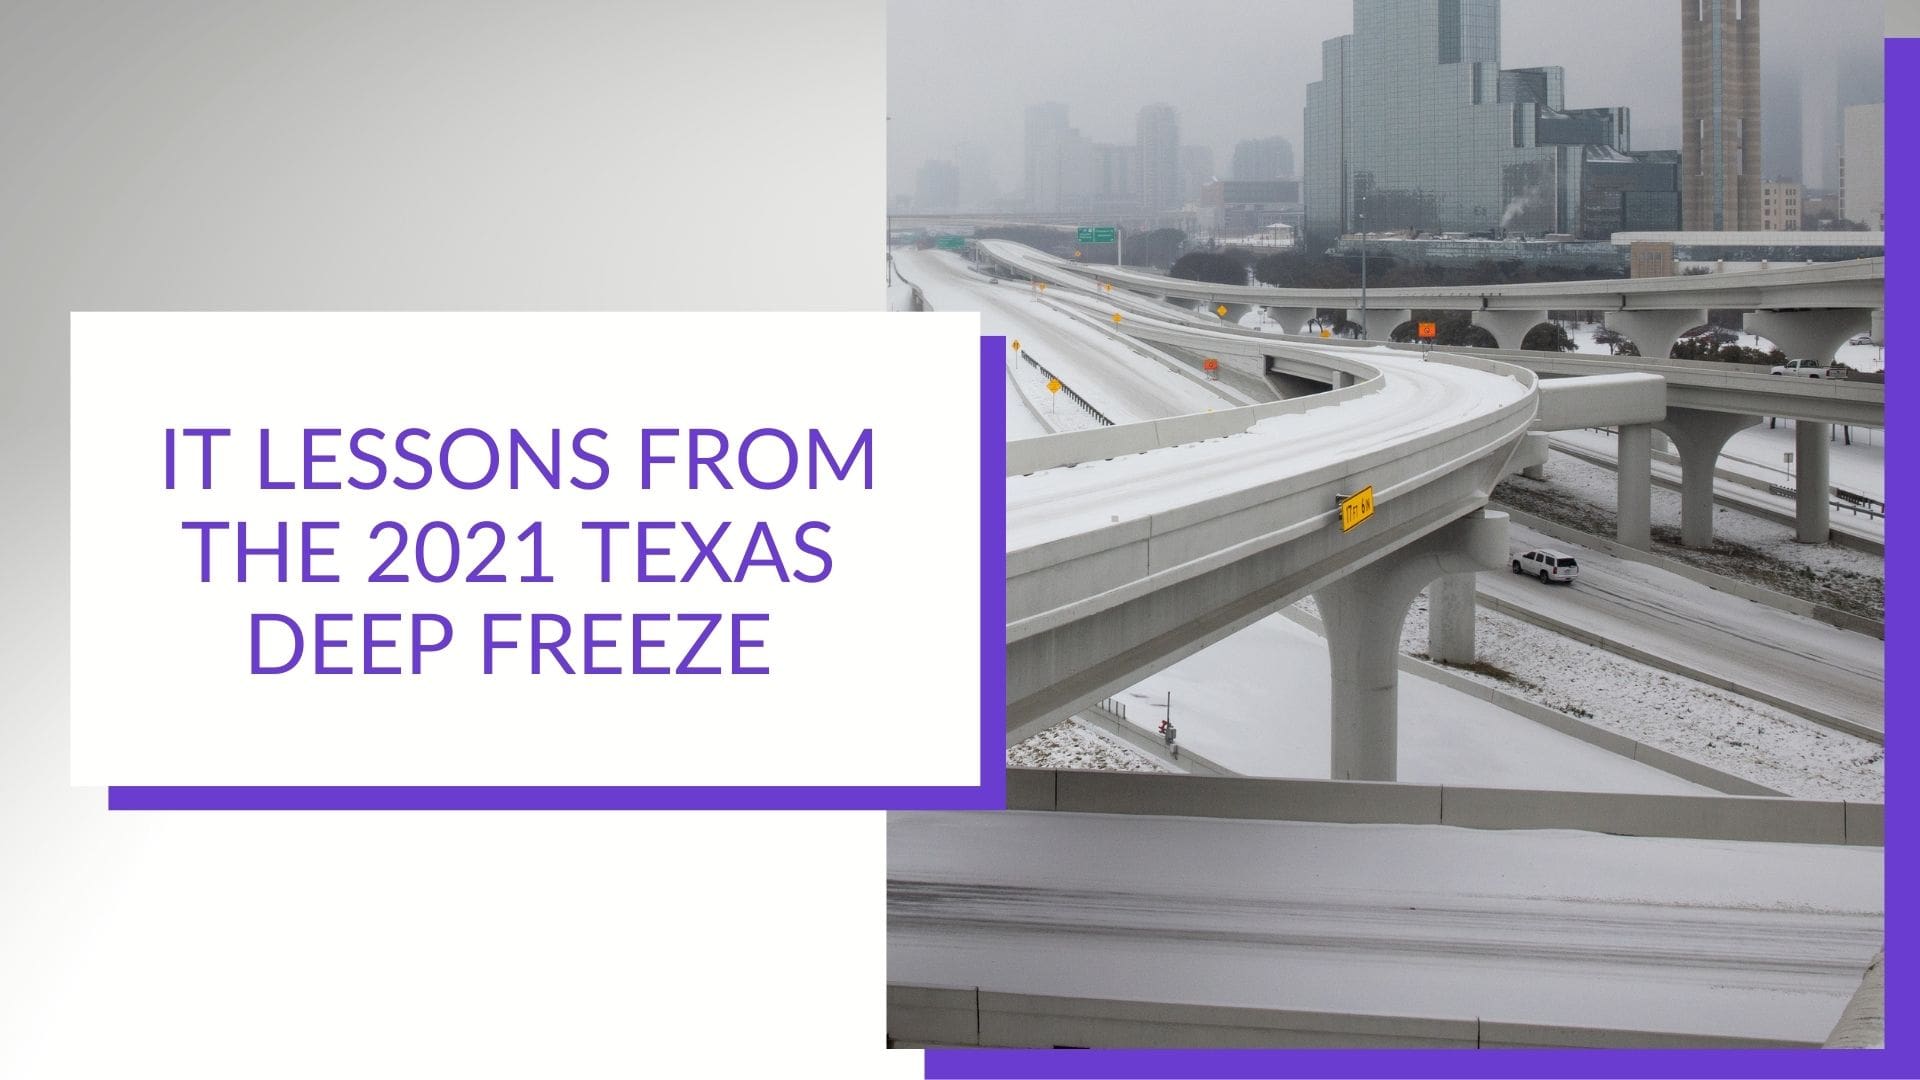 2021 texas freeze image